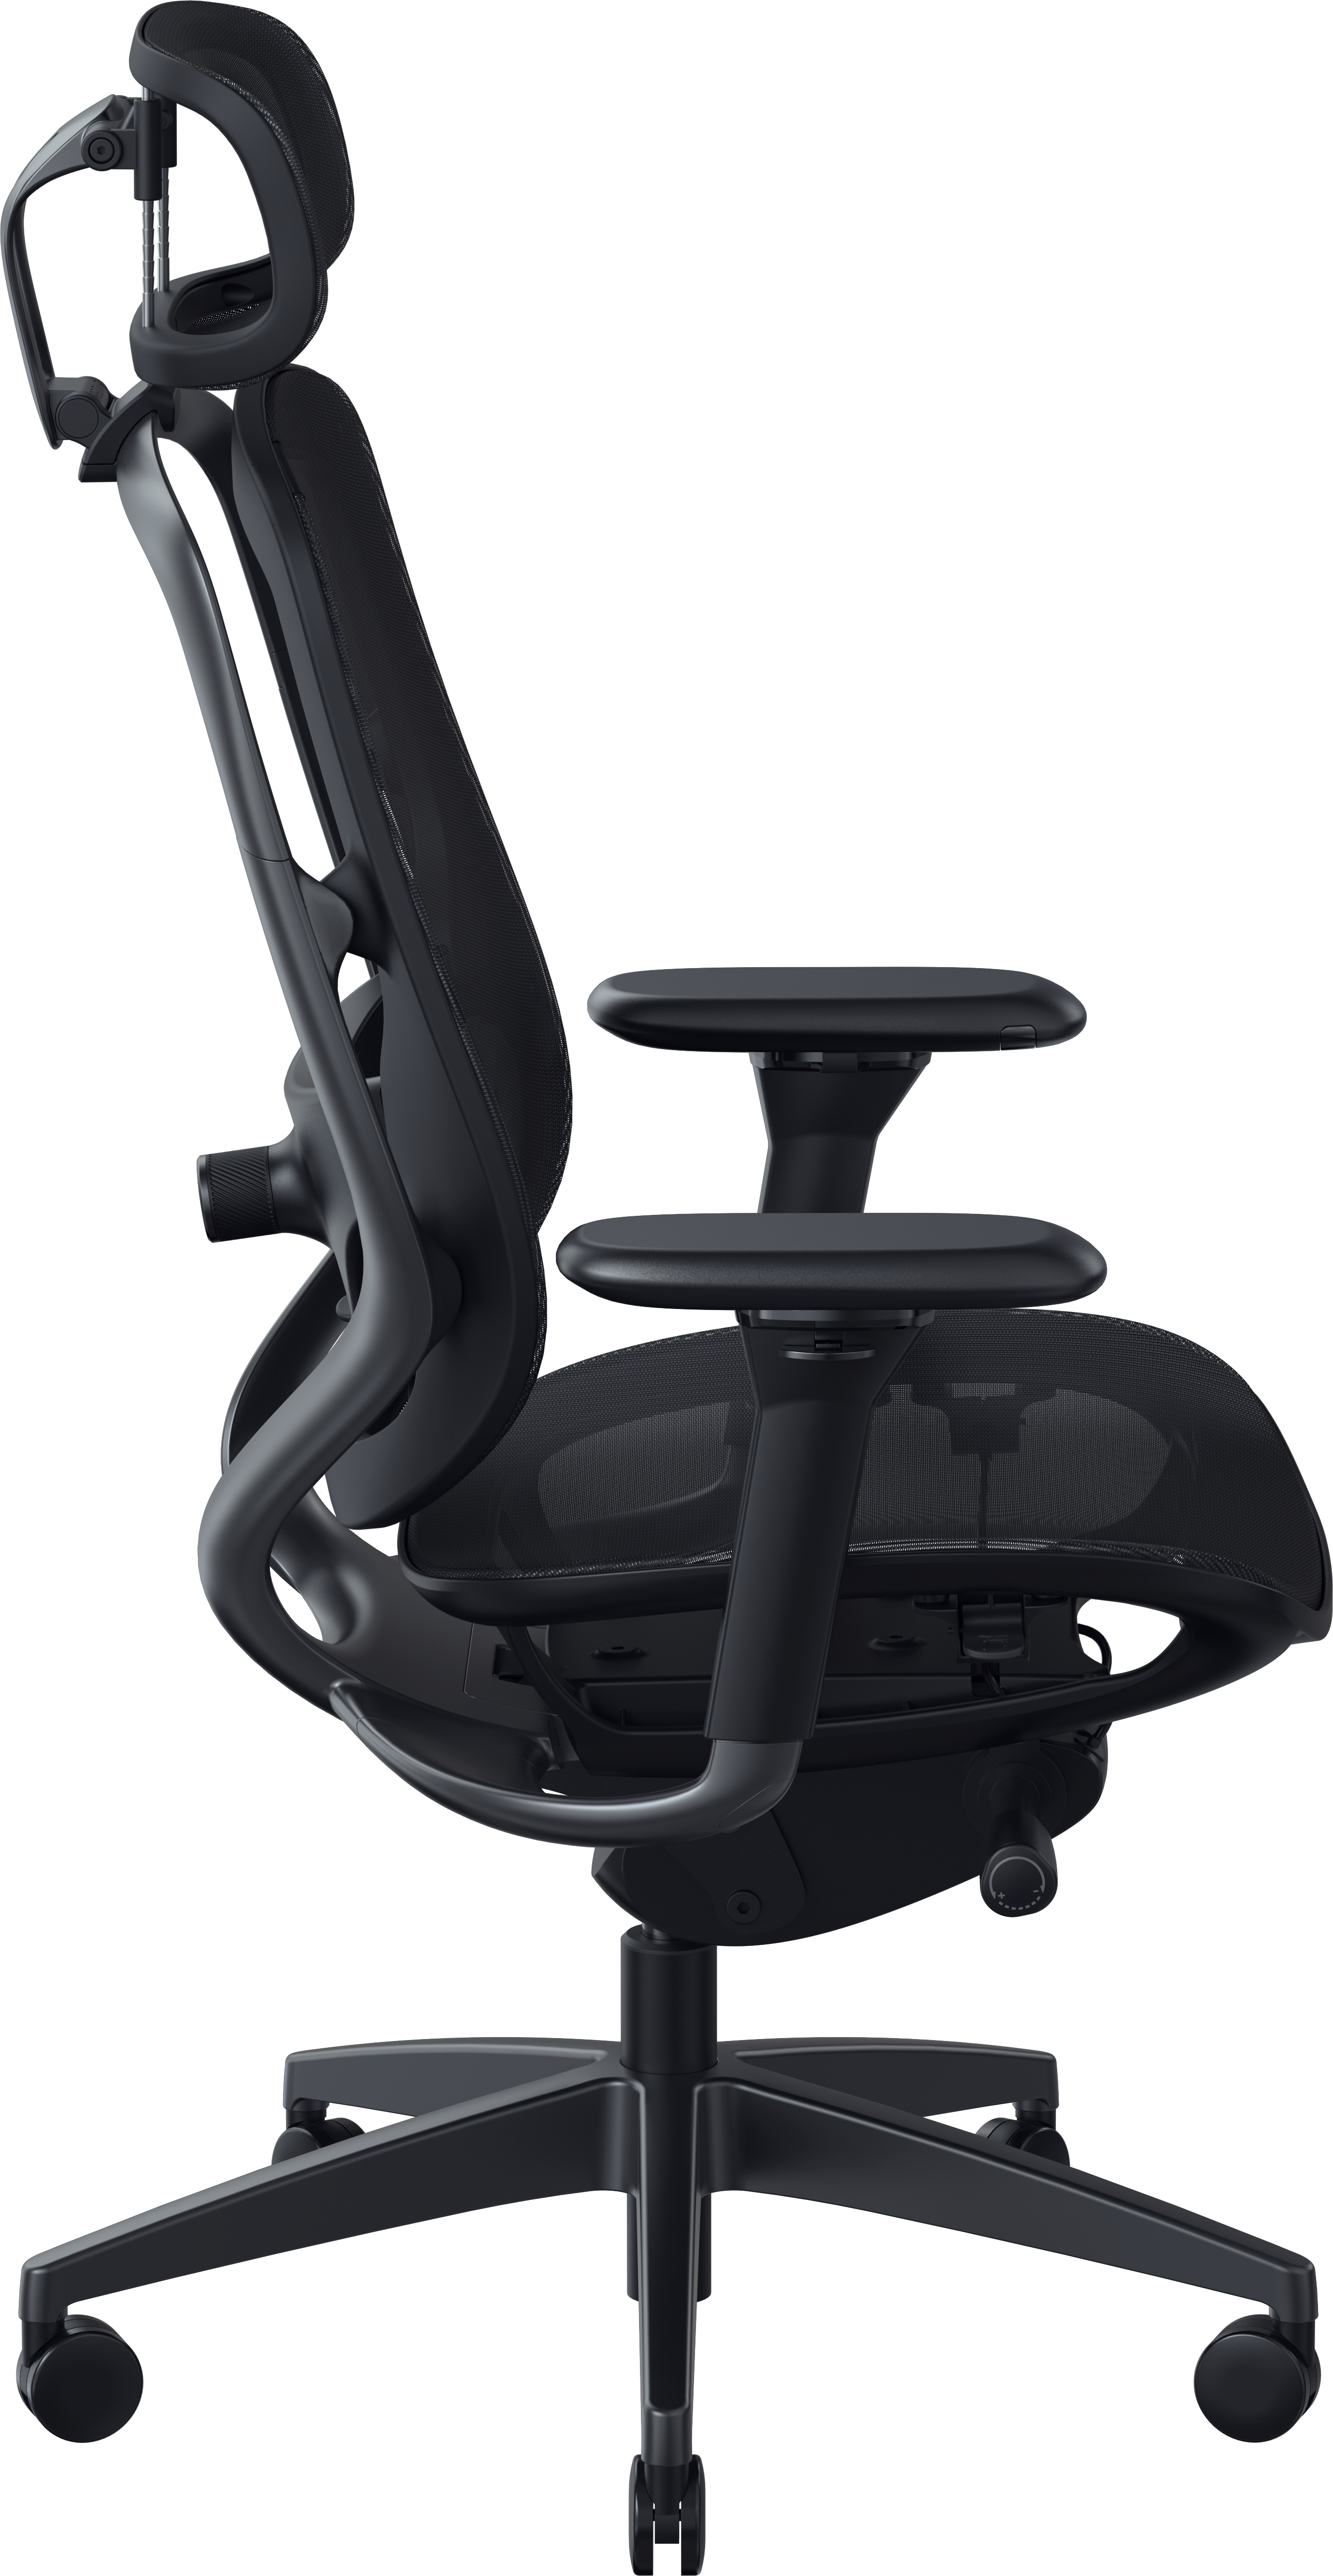 RAZER Fujin Pro - Anpassbarer Gaming-Stuhl mit robustem